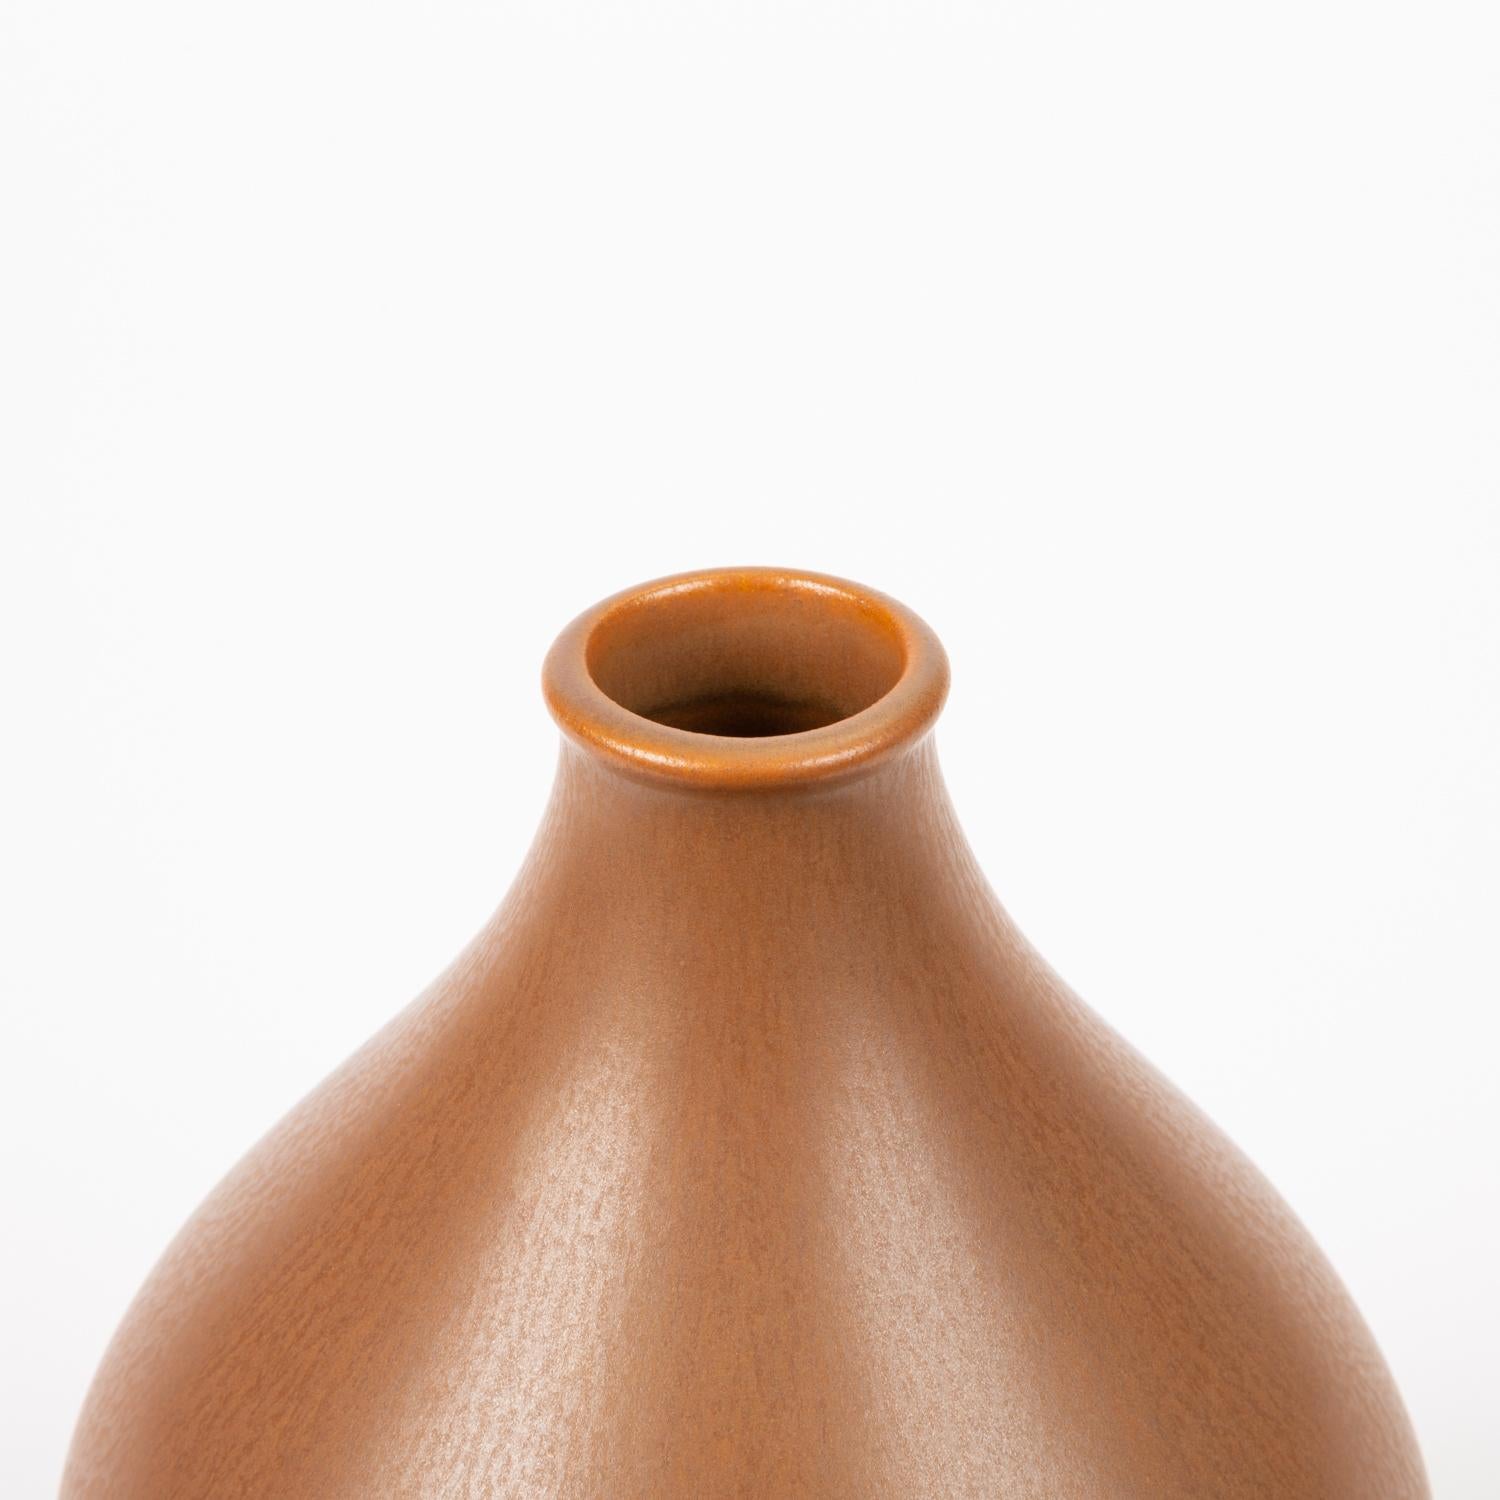 Glazed Vitrin Vase by Stig Lindberg for Gustavsberg of Sweden